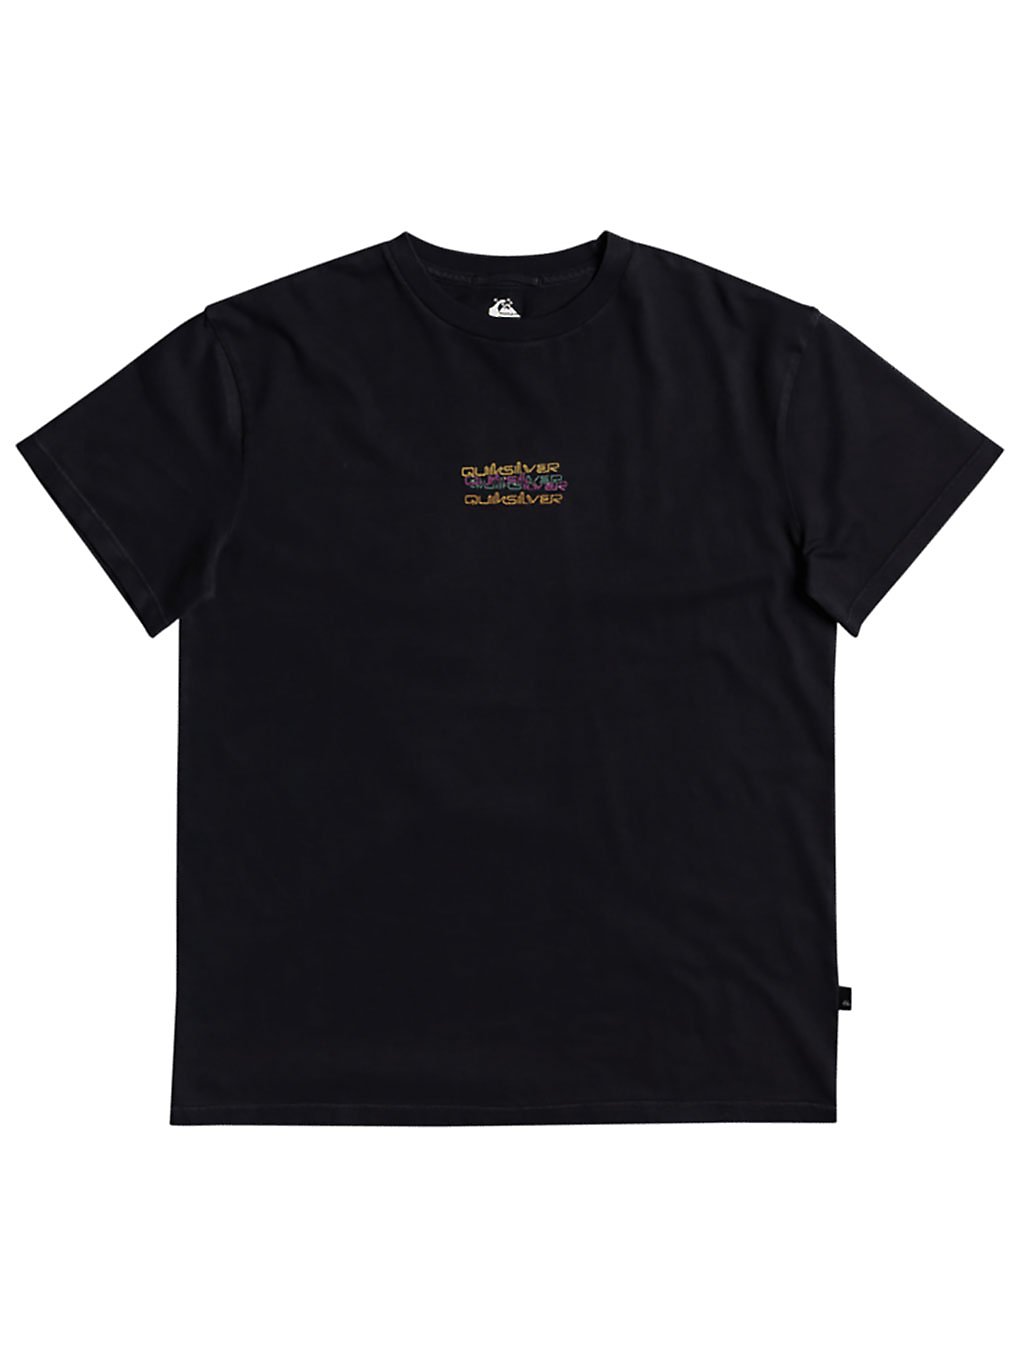 Quiksilver OG Tangled T-Shirt black